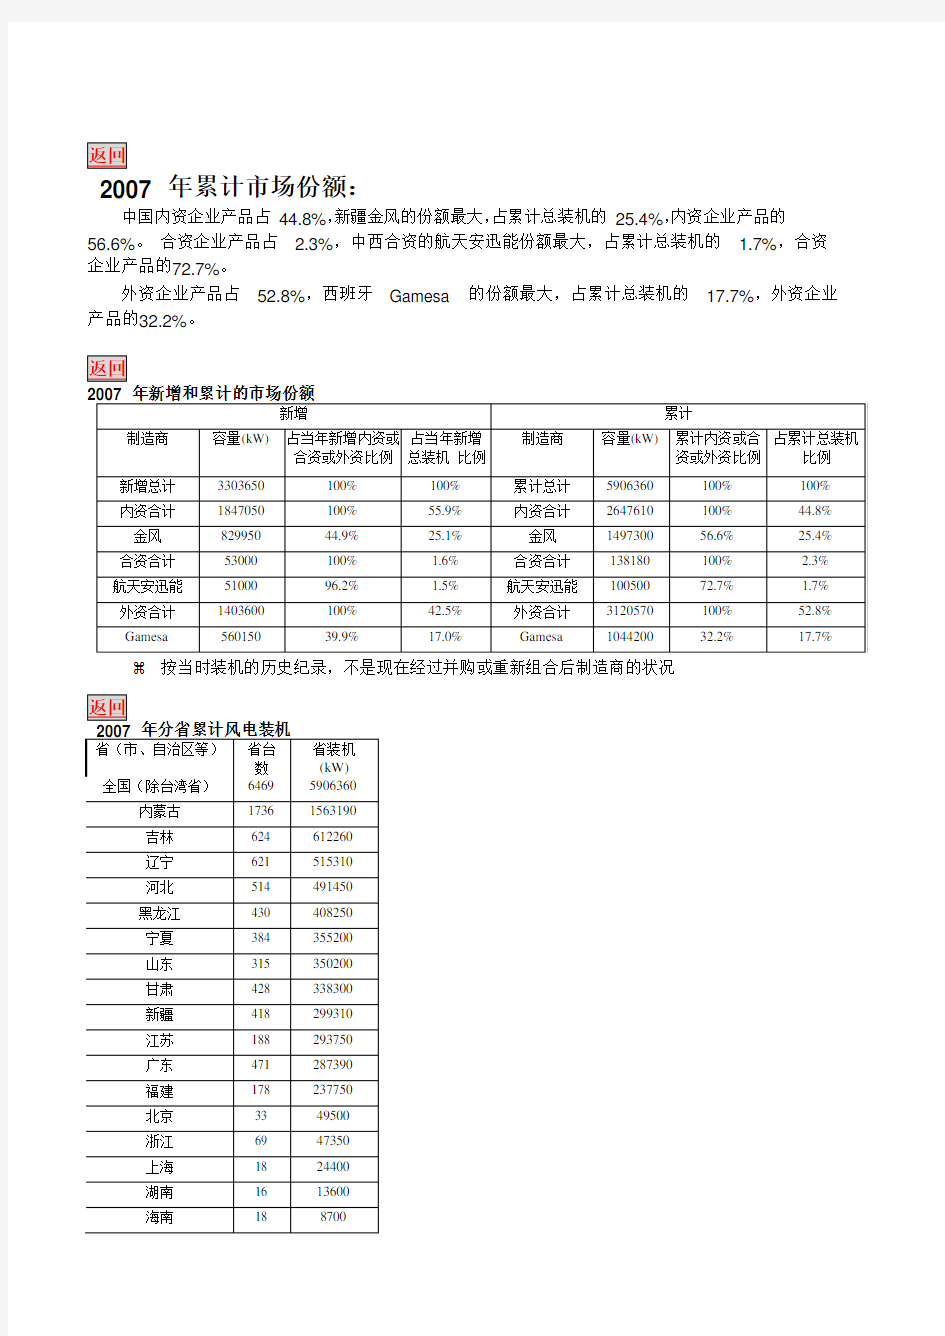 中国风电场装机容量统计